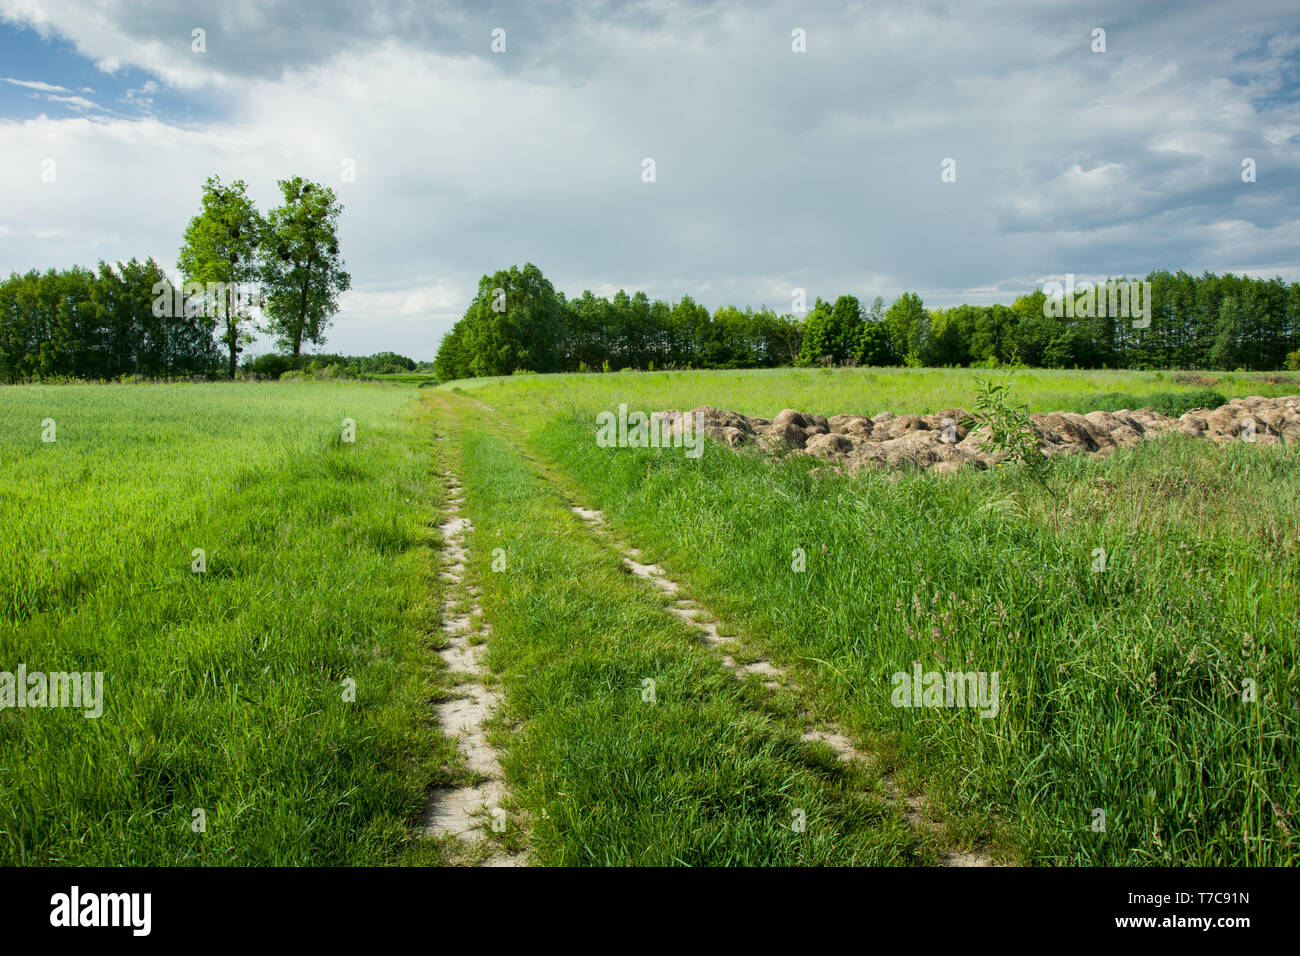 Boden Straße durch grüne Felder, Bäume und graue Wolken am Himmel Stockfoto